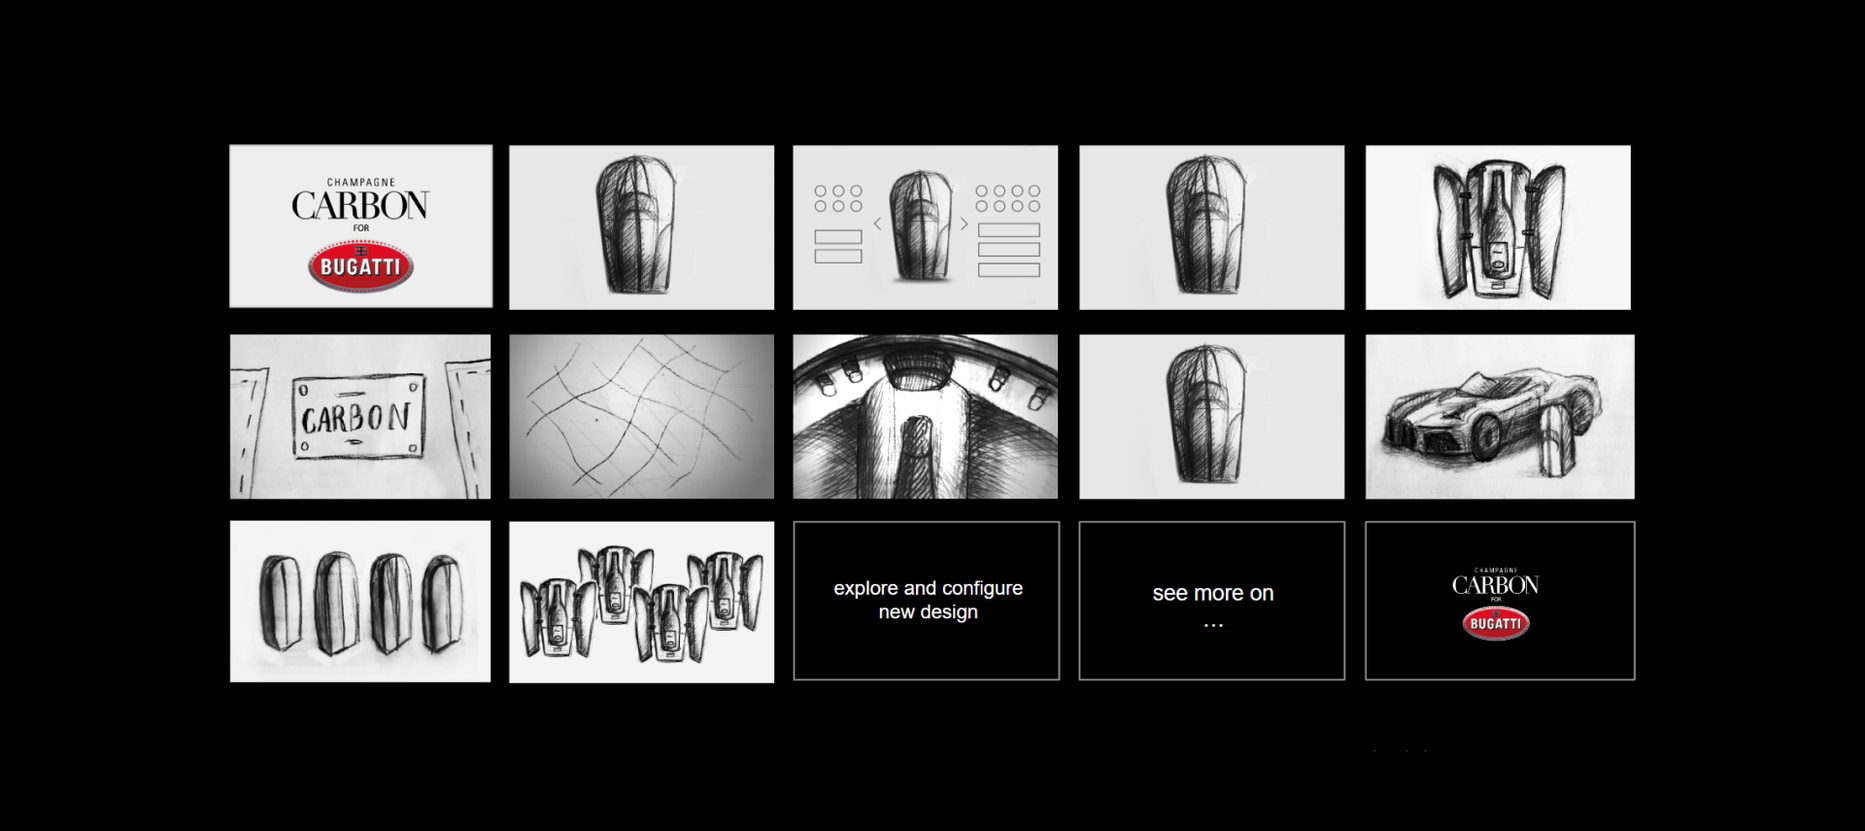 Анімаційне 3D-відео для колаборації люксових брендів Carbon Champagne та Bugatti — Rubarb - Зображення - 1